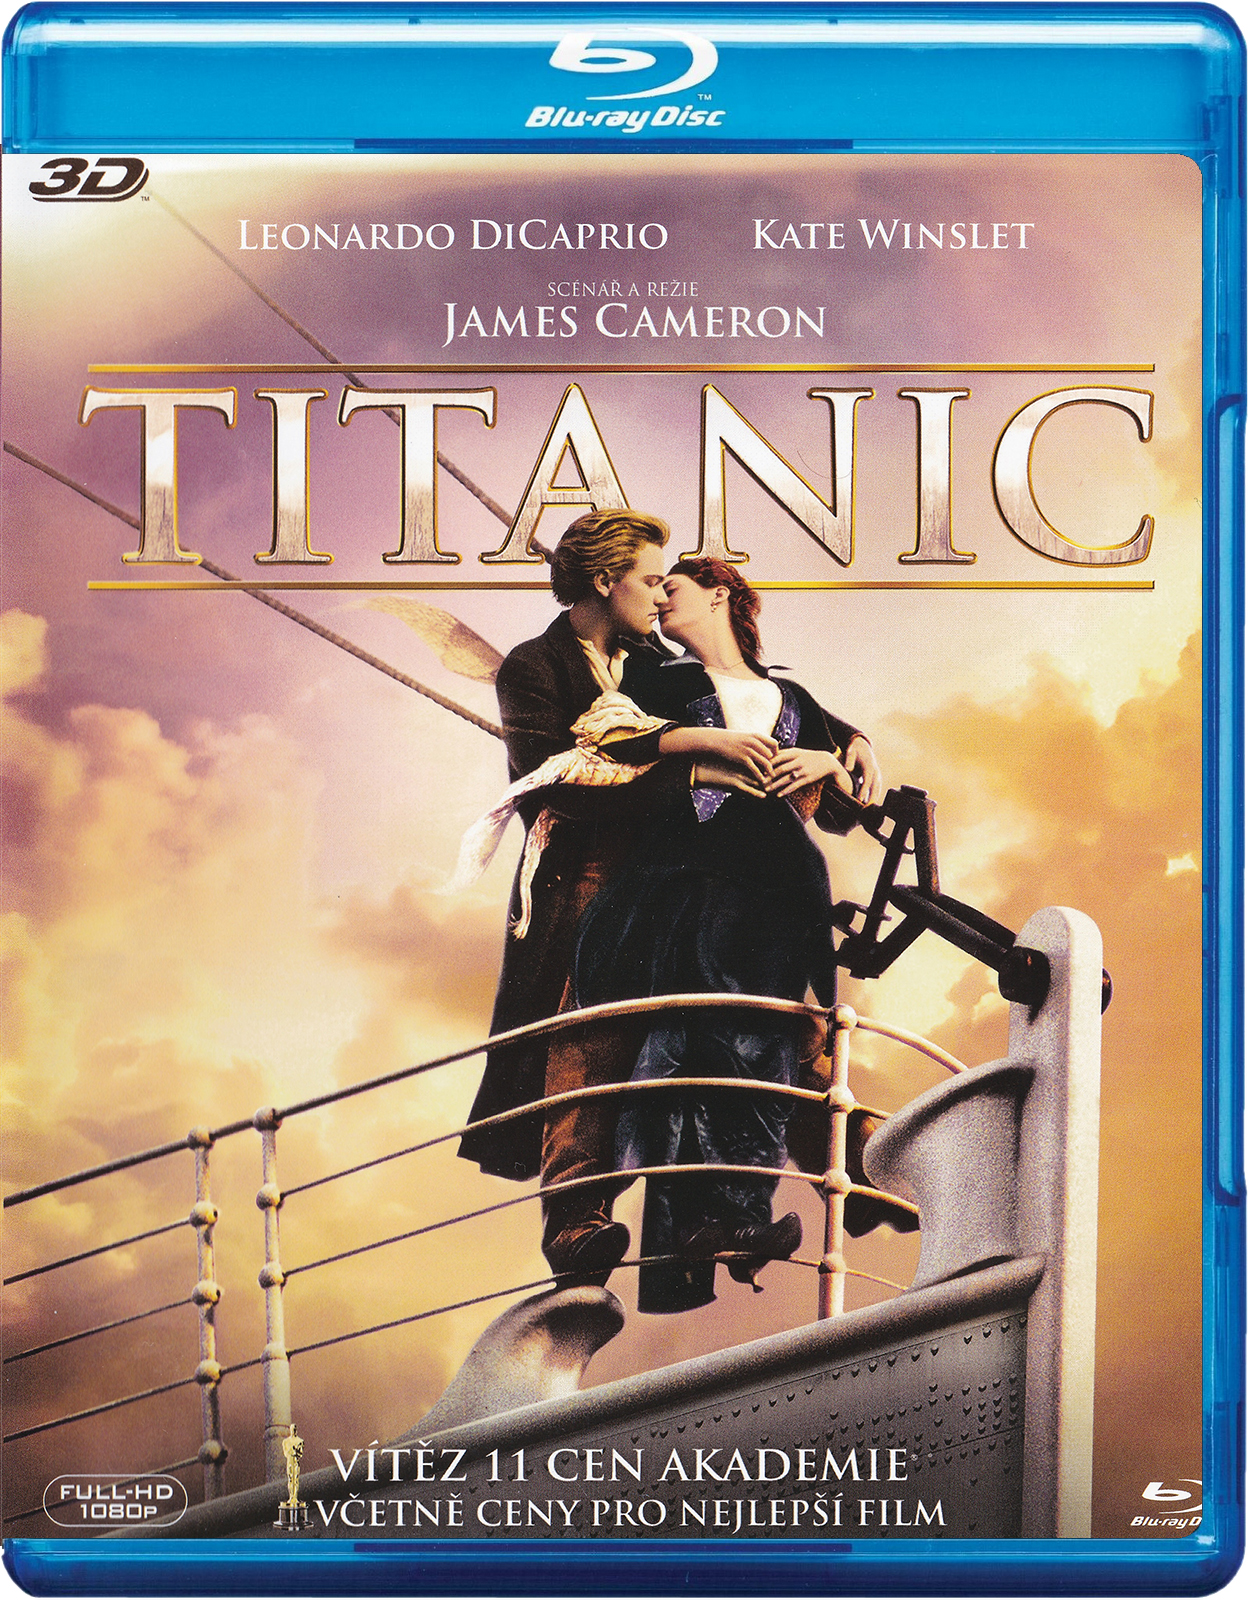 Stiahni si HD Filmy Titanic (1997)[1080pHD] = CSFD 85%